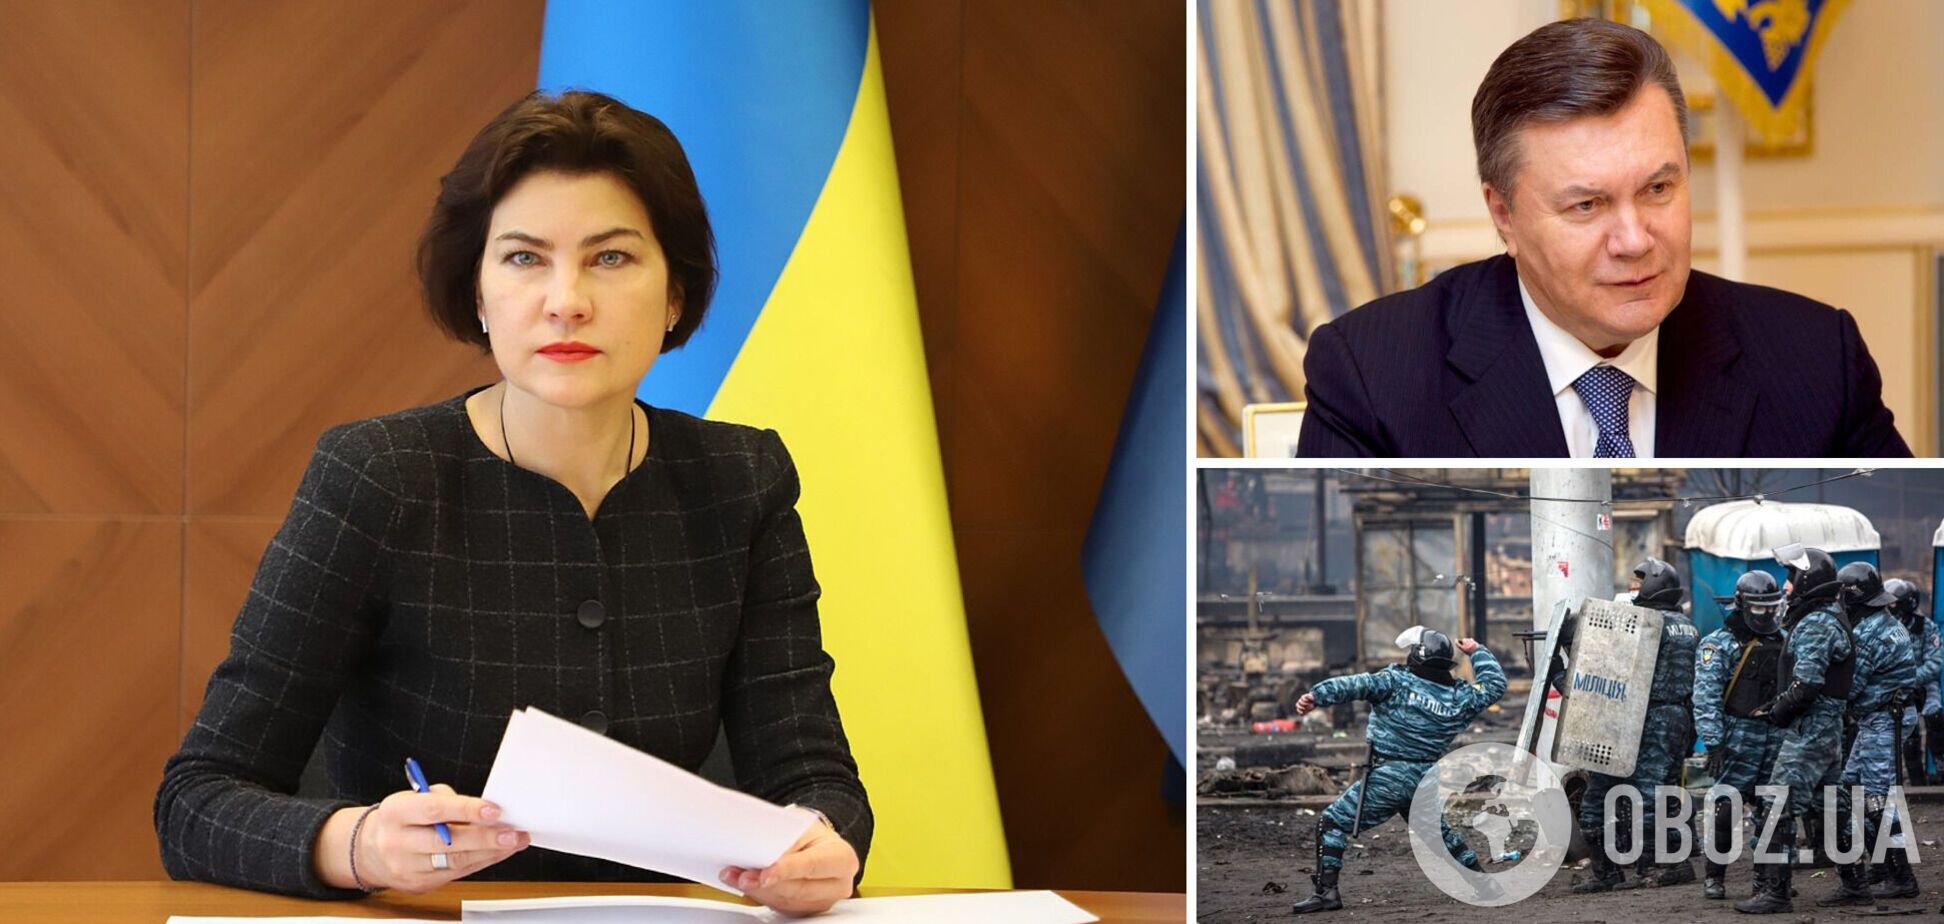 Стали известны детали расследования по делу Майдана